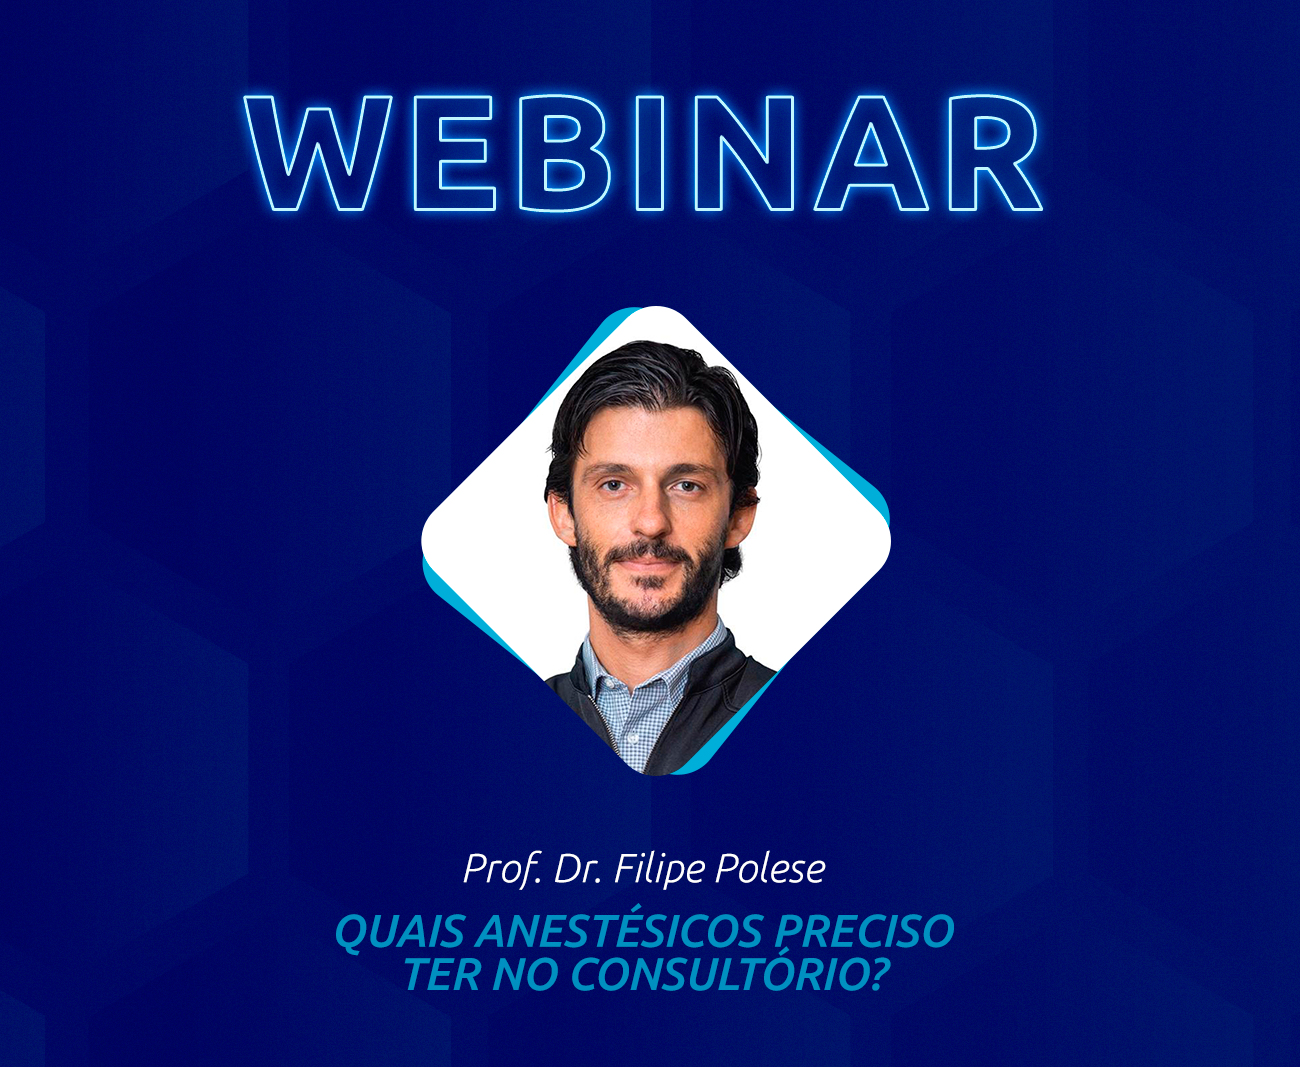 Desafios do uso de anestésicos em consultório - Prof. Dr. Filipe Polese